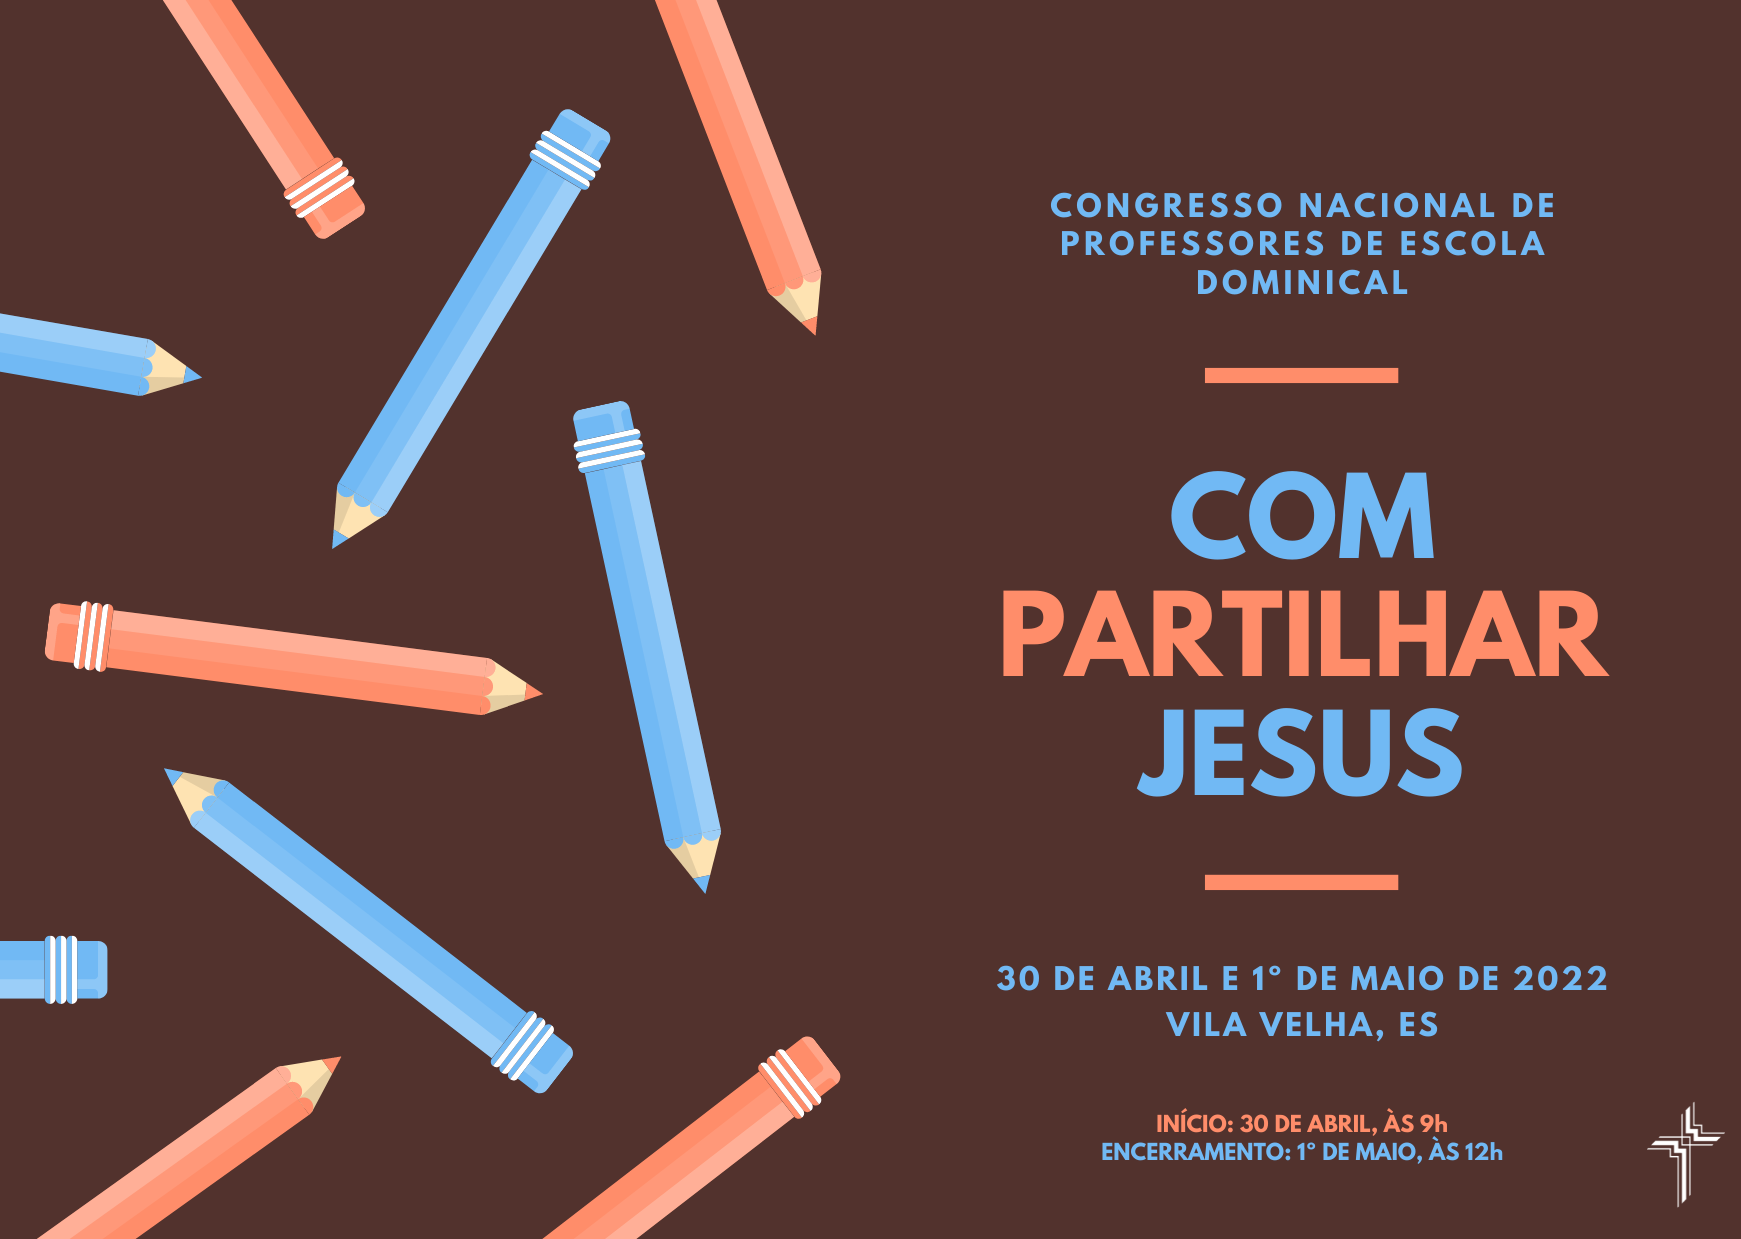 Congresso Nacional de Professores de Escola Dominical em Vila Velha, ES